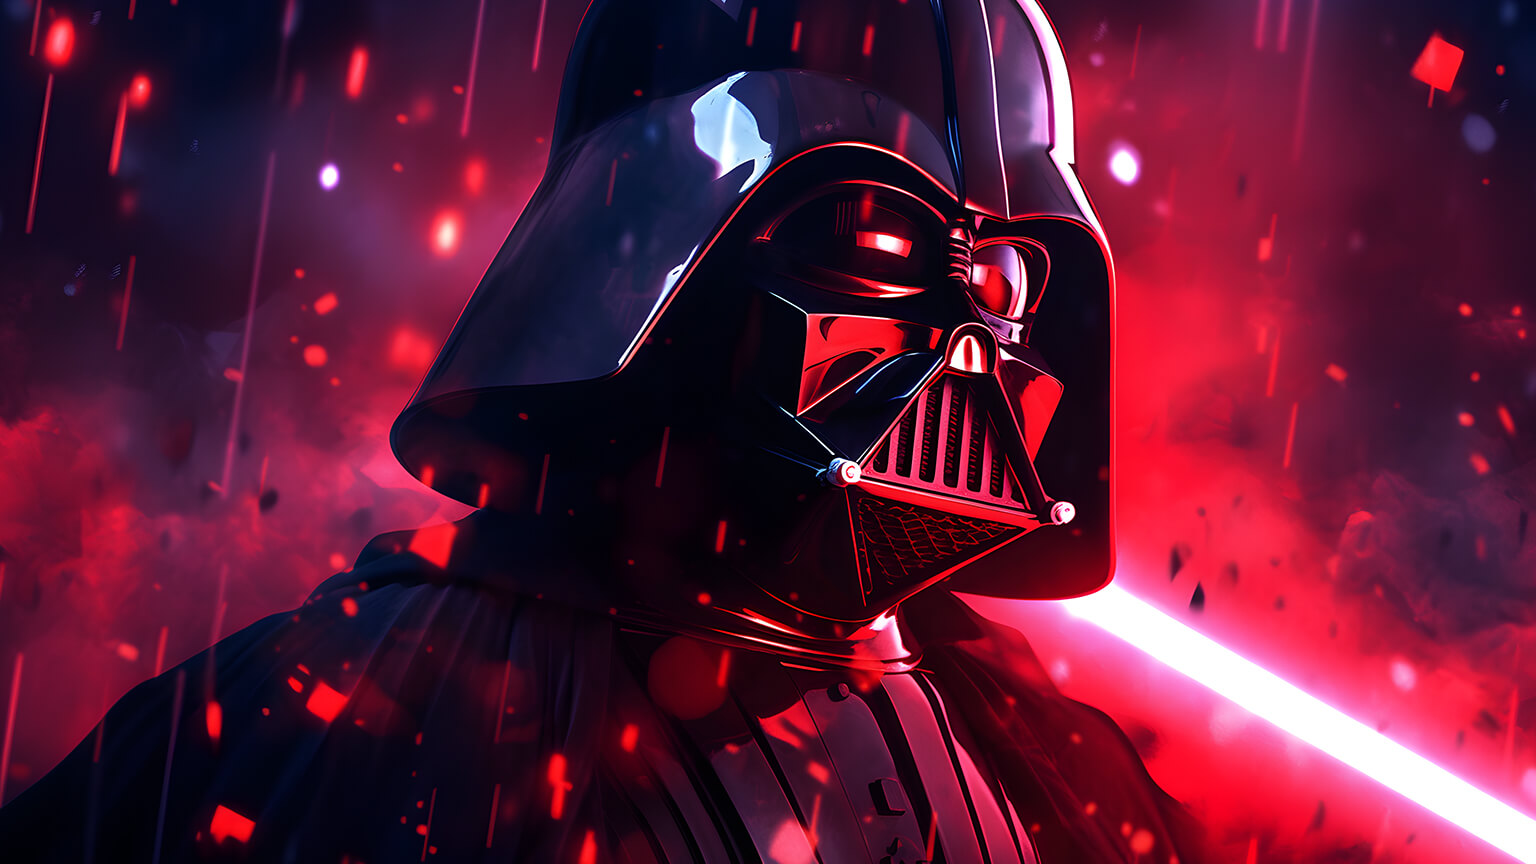 Star Wars Darth Vader Desktop Wallpaper - Star Wars Wallpaper 4K